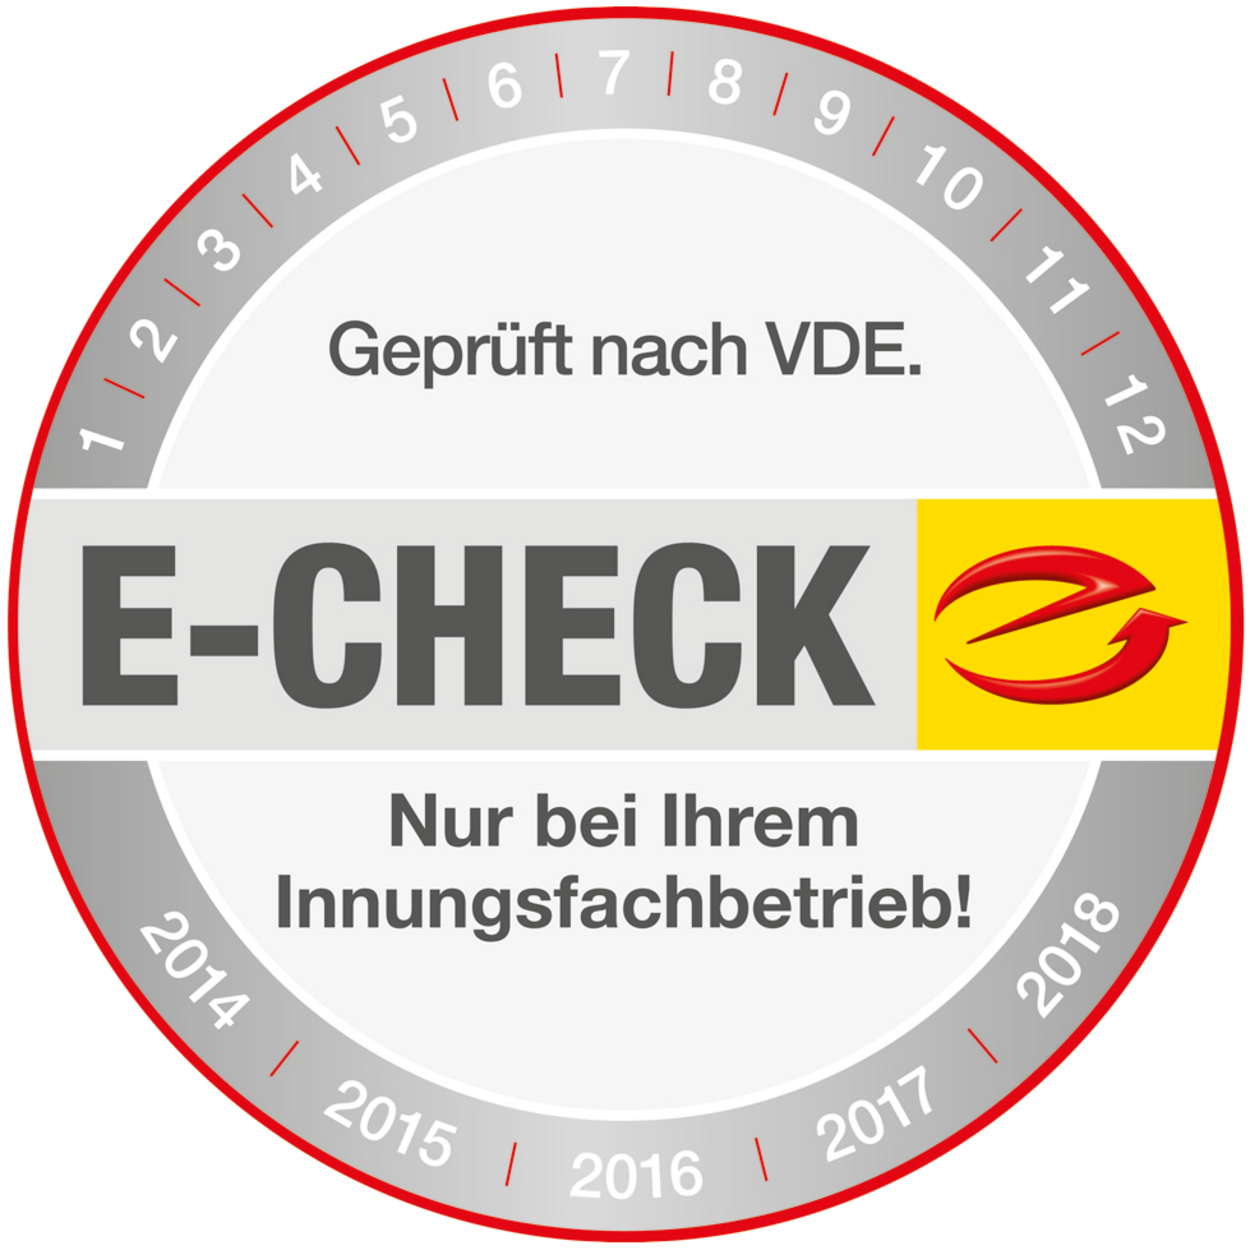 Der E-Check bei Götzberger Elektroanlagen GmbH in 85521